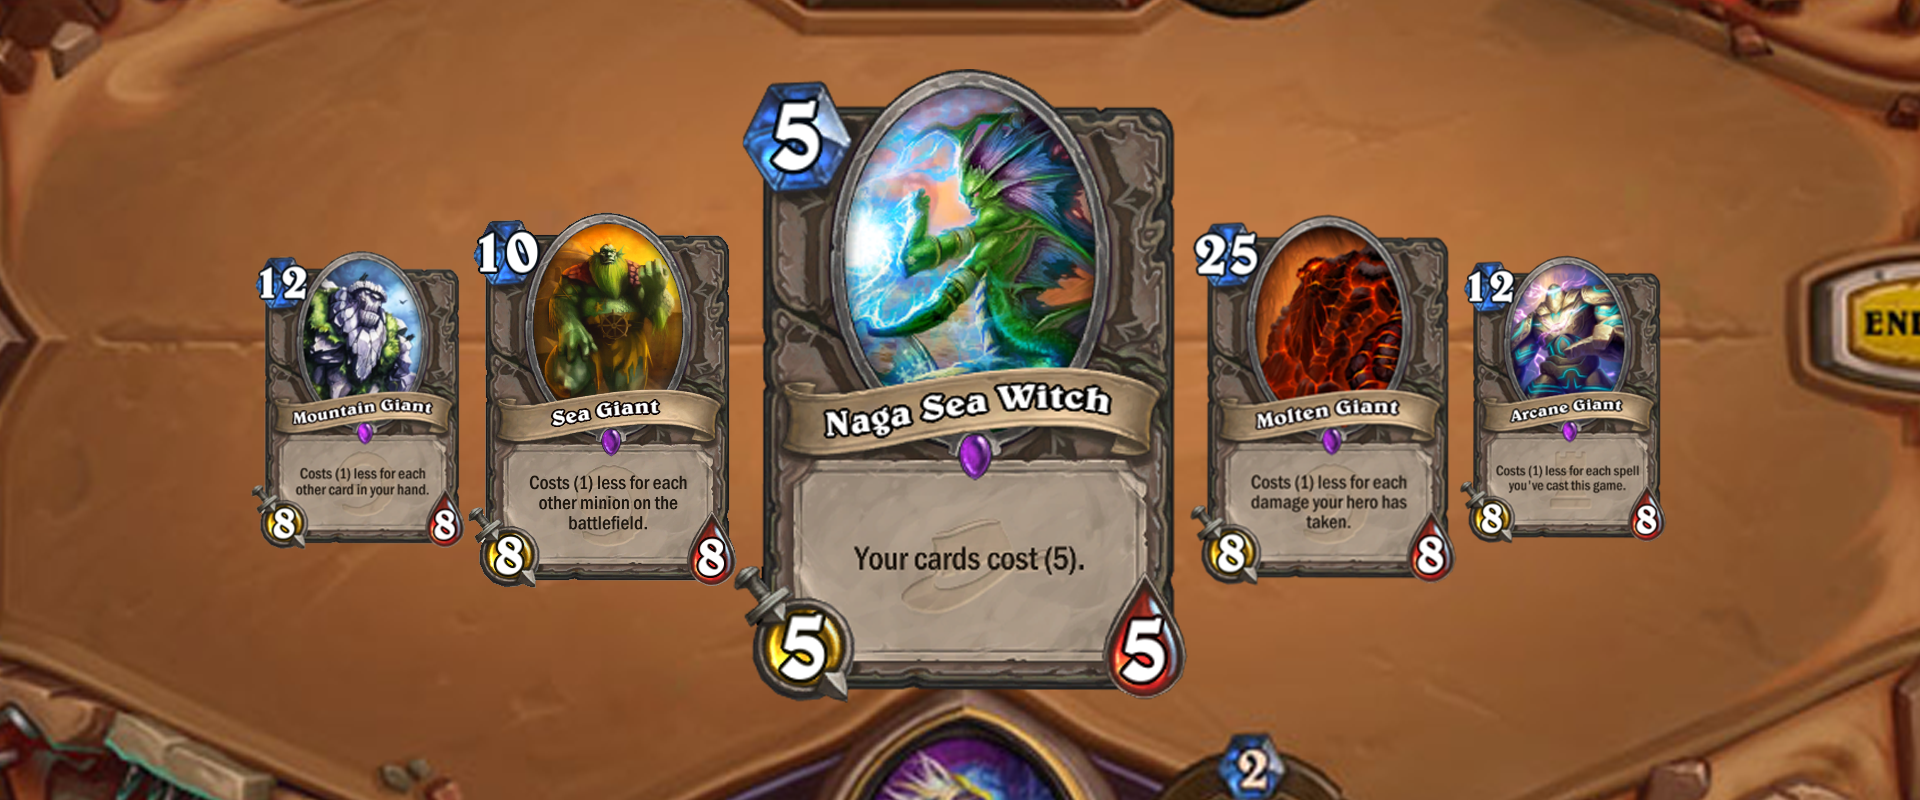 Egy Wild játékos gyötrelmei: A Naga Sea Witch